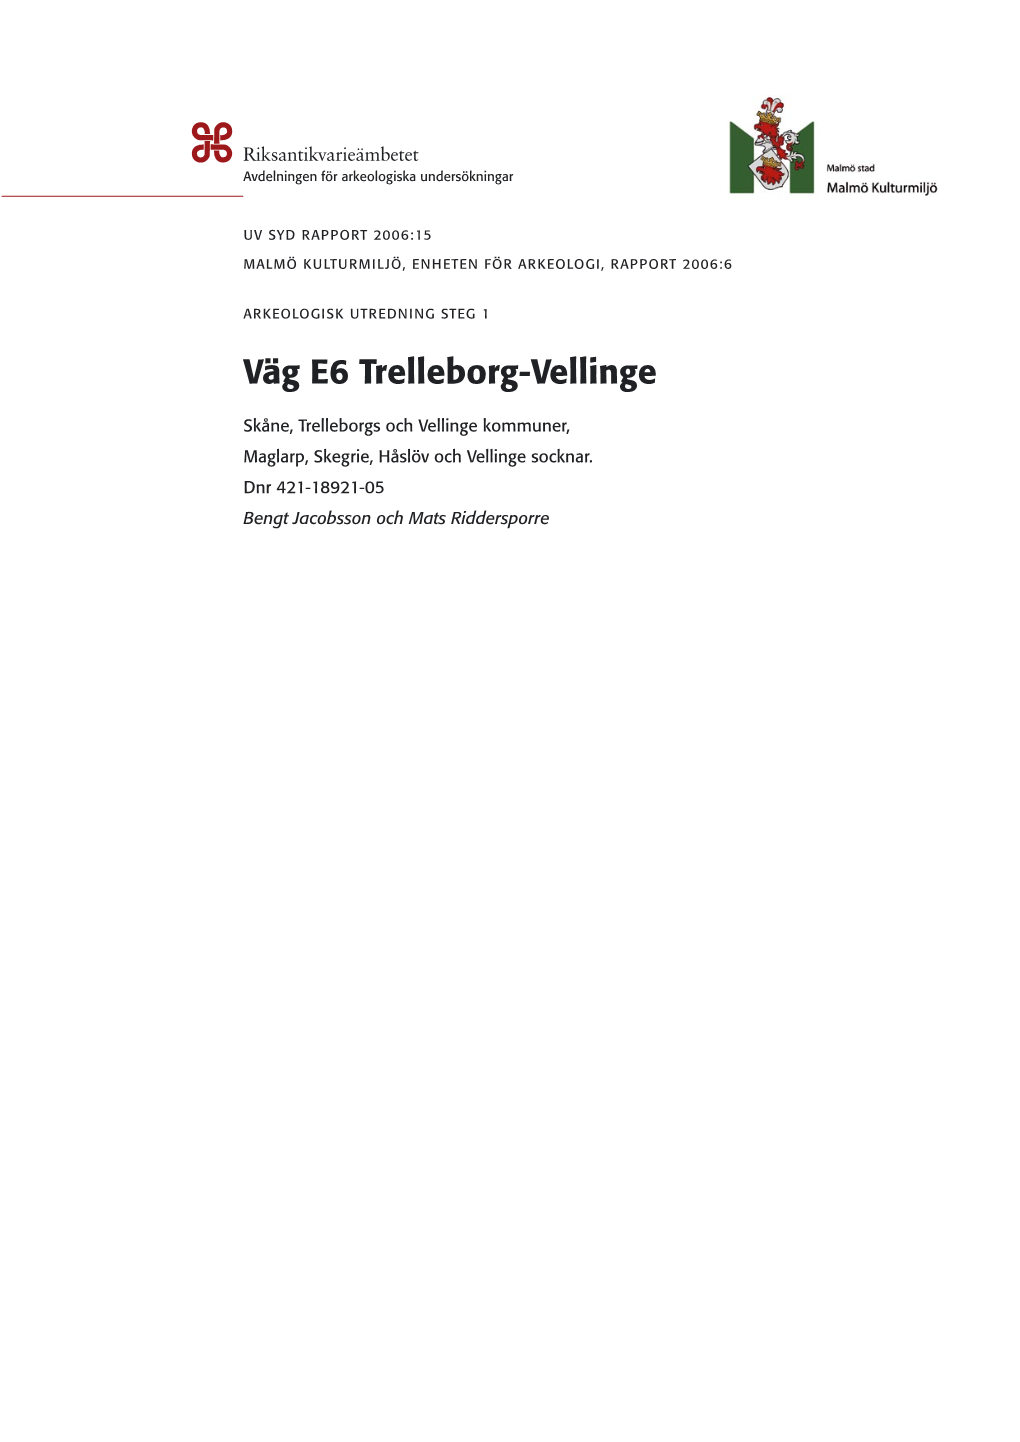 Väg E6 Trelleborg-Vellinge